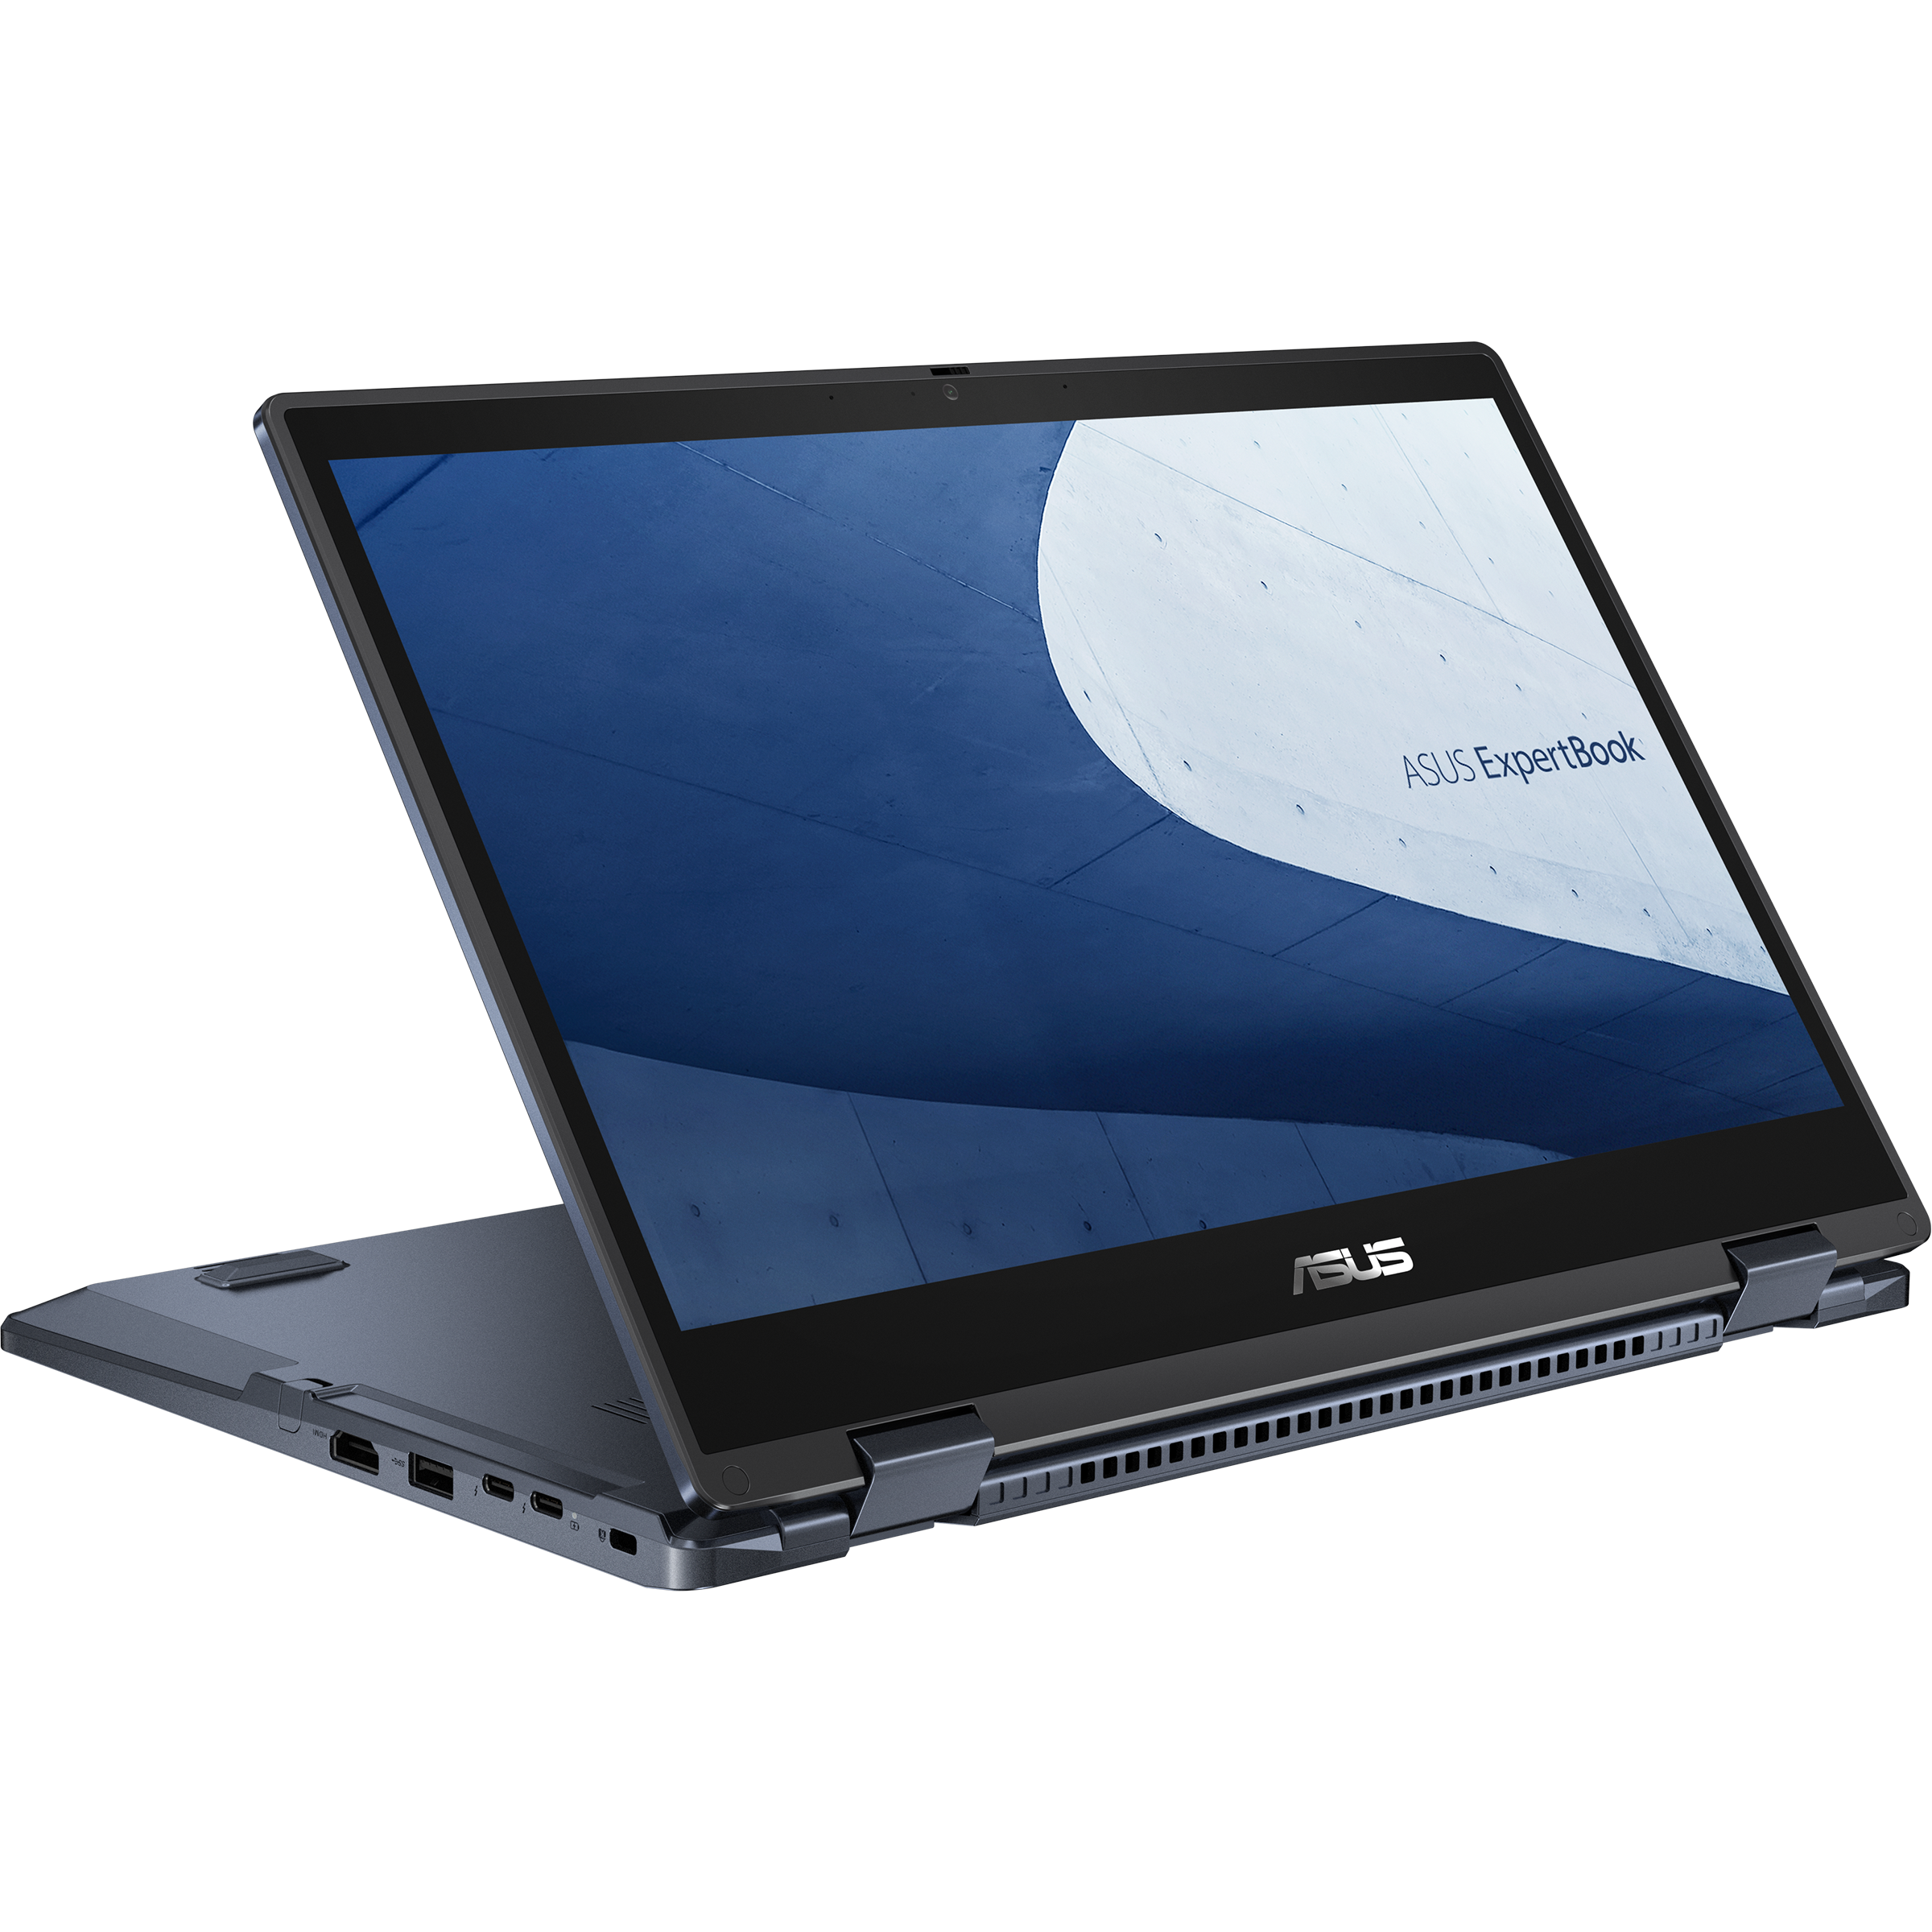 Asus ExpertBook Advanced B3 Flip B3402FEA-EC0530R